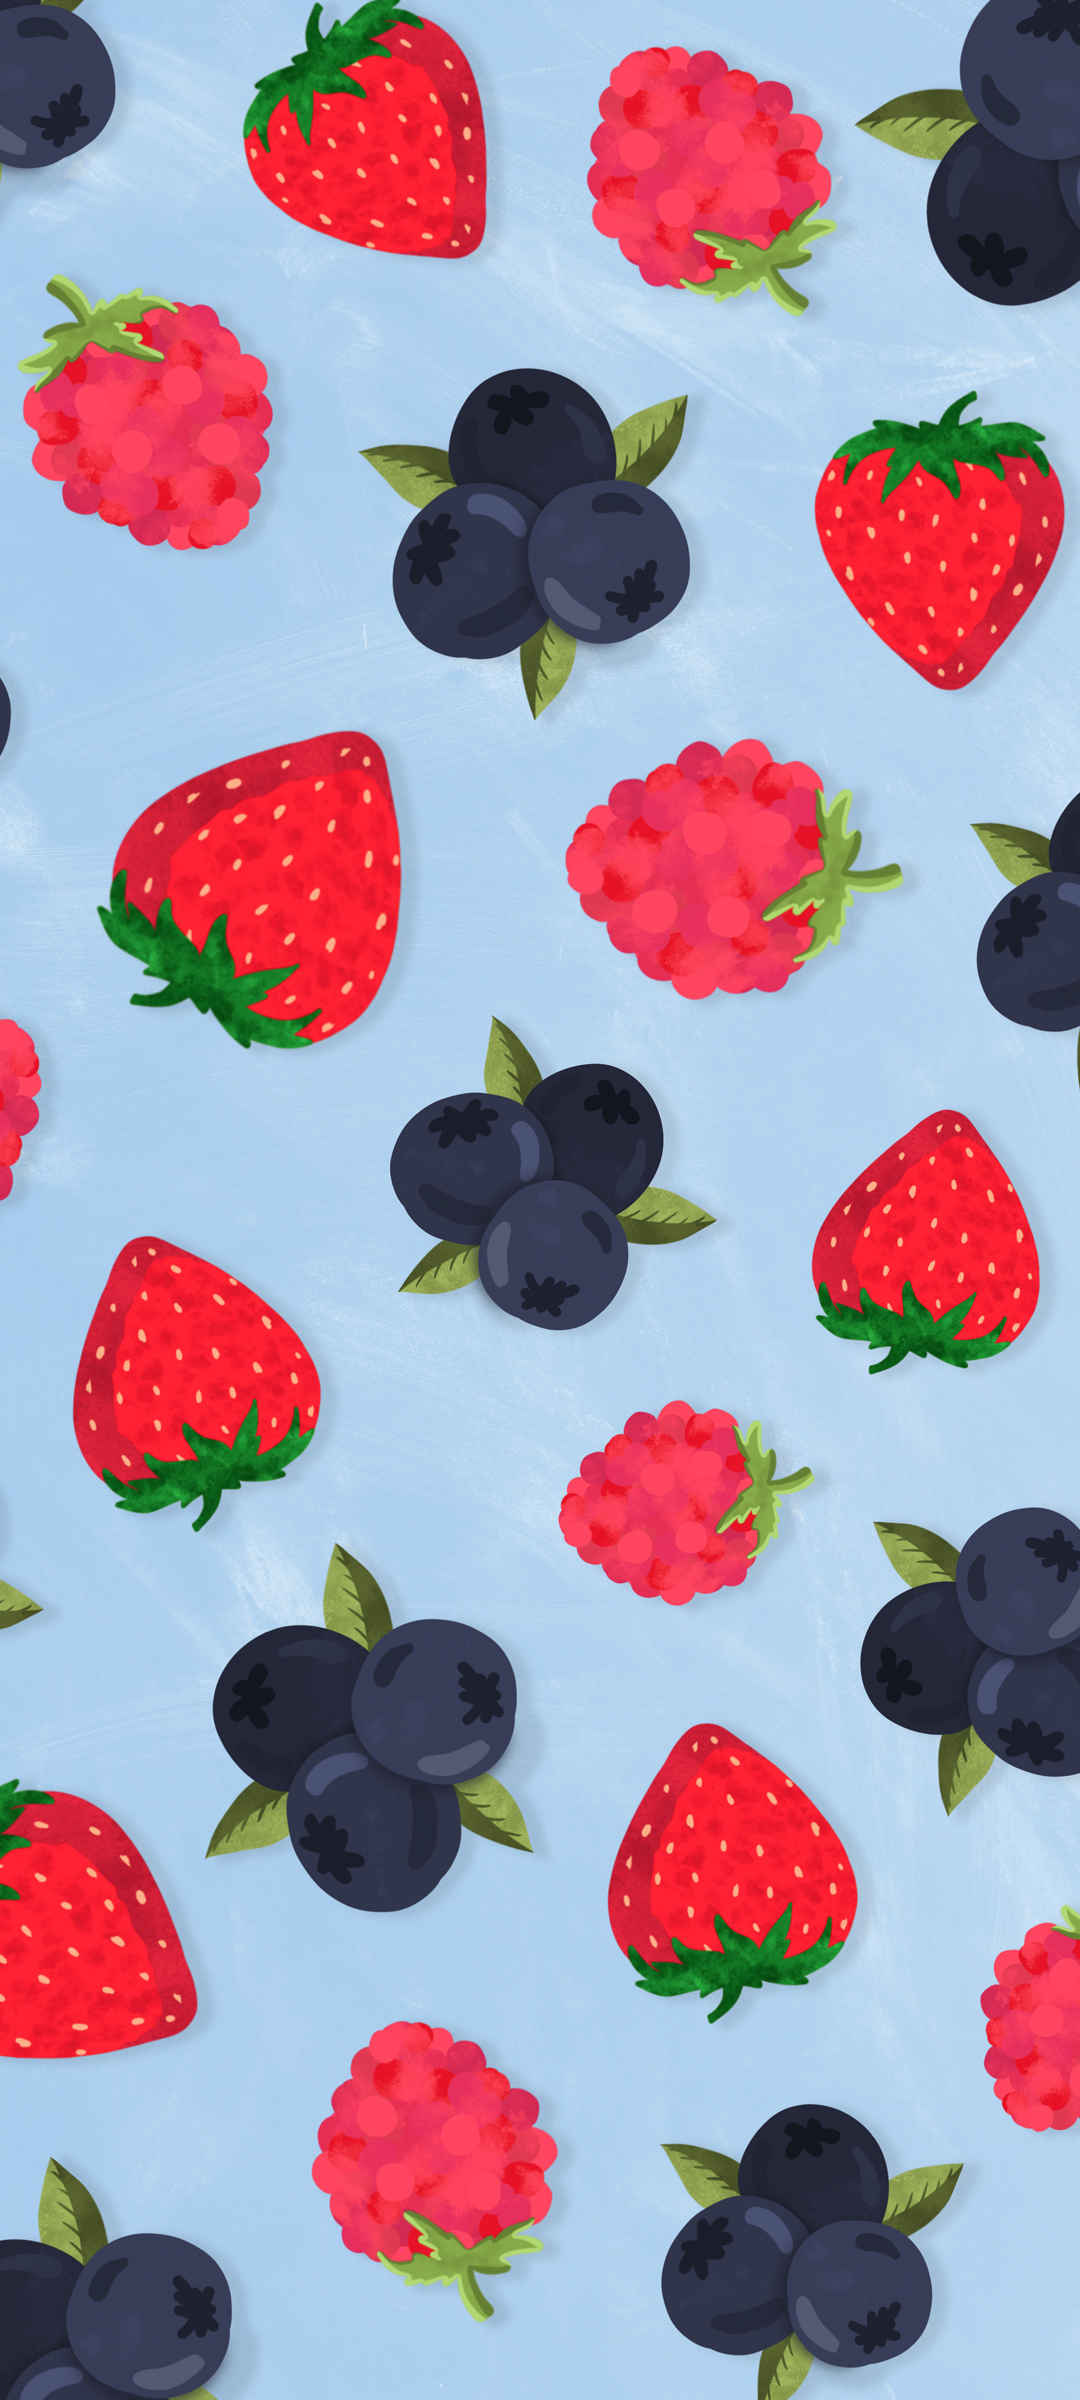 女生专用草莓水果背景可爱手机壁纸-